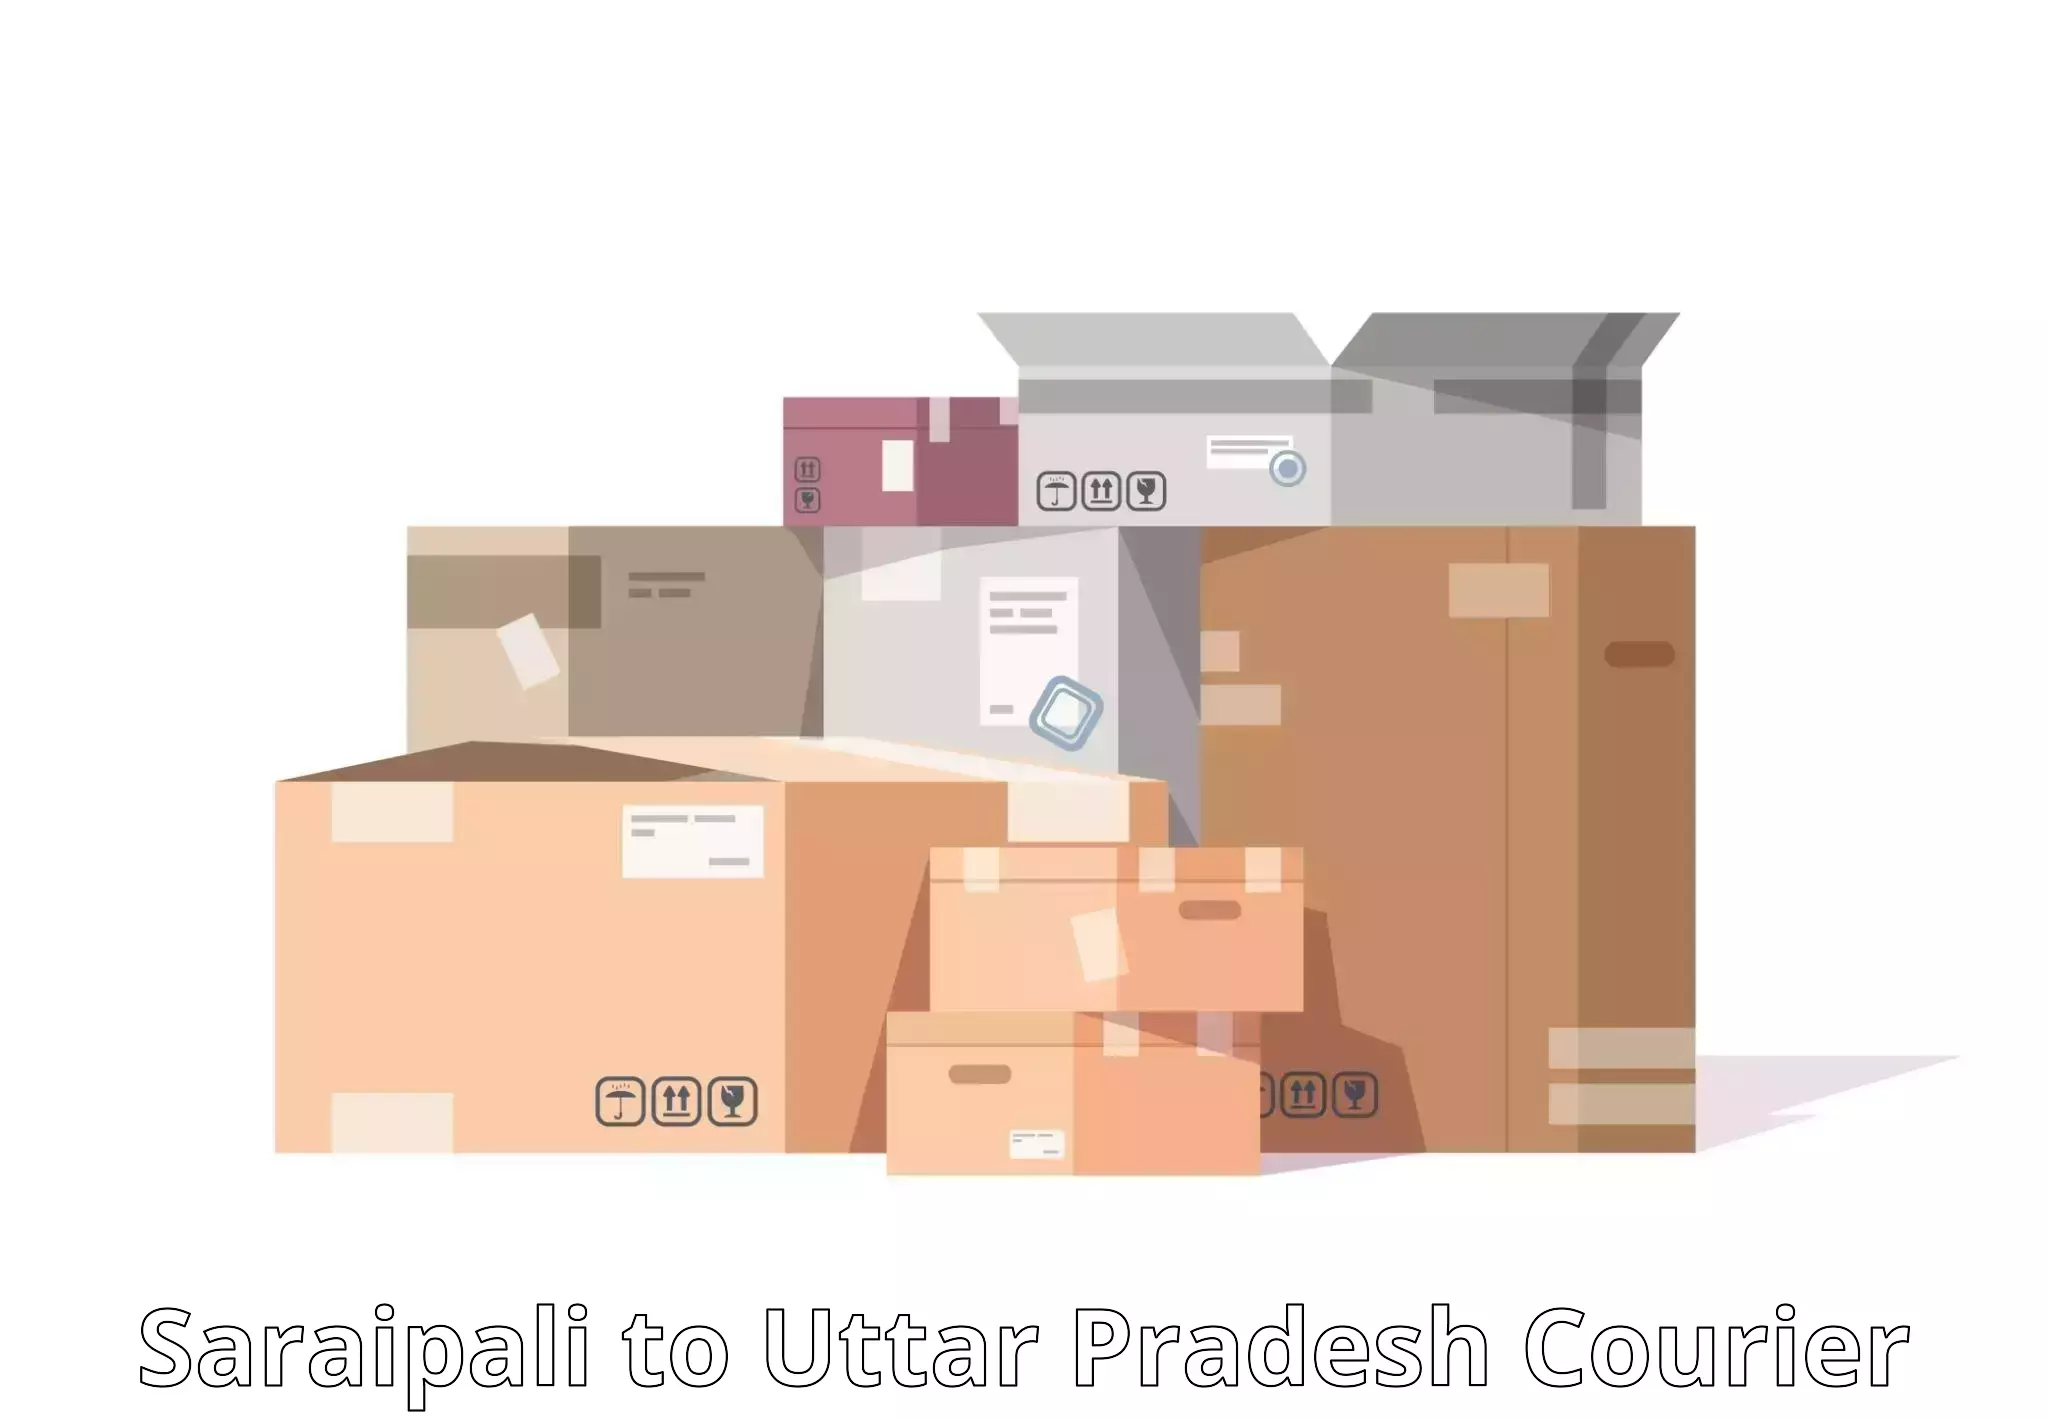 Comprehensive logistics Saraipali to Jalalpur